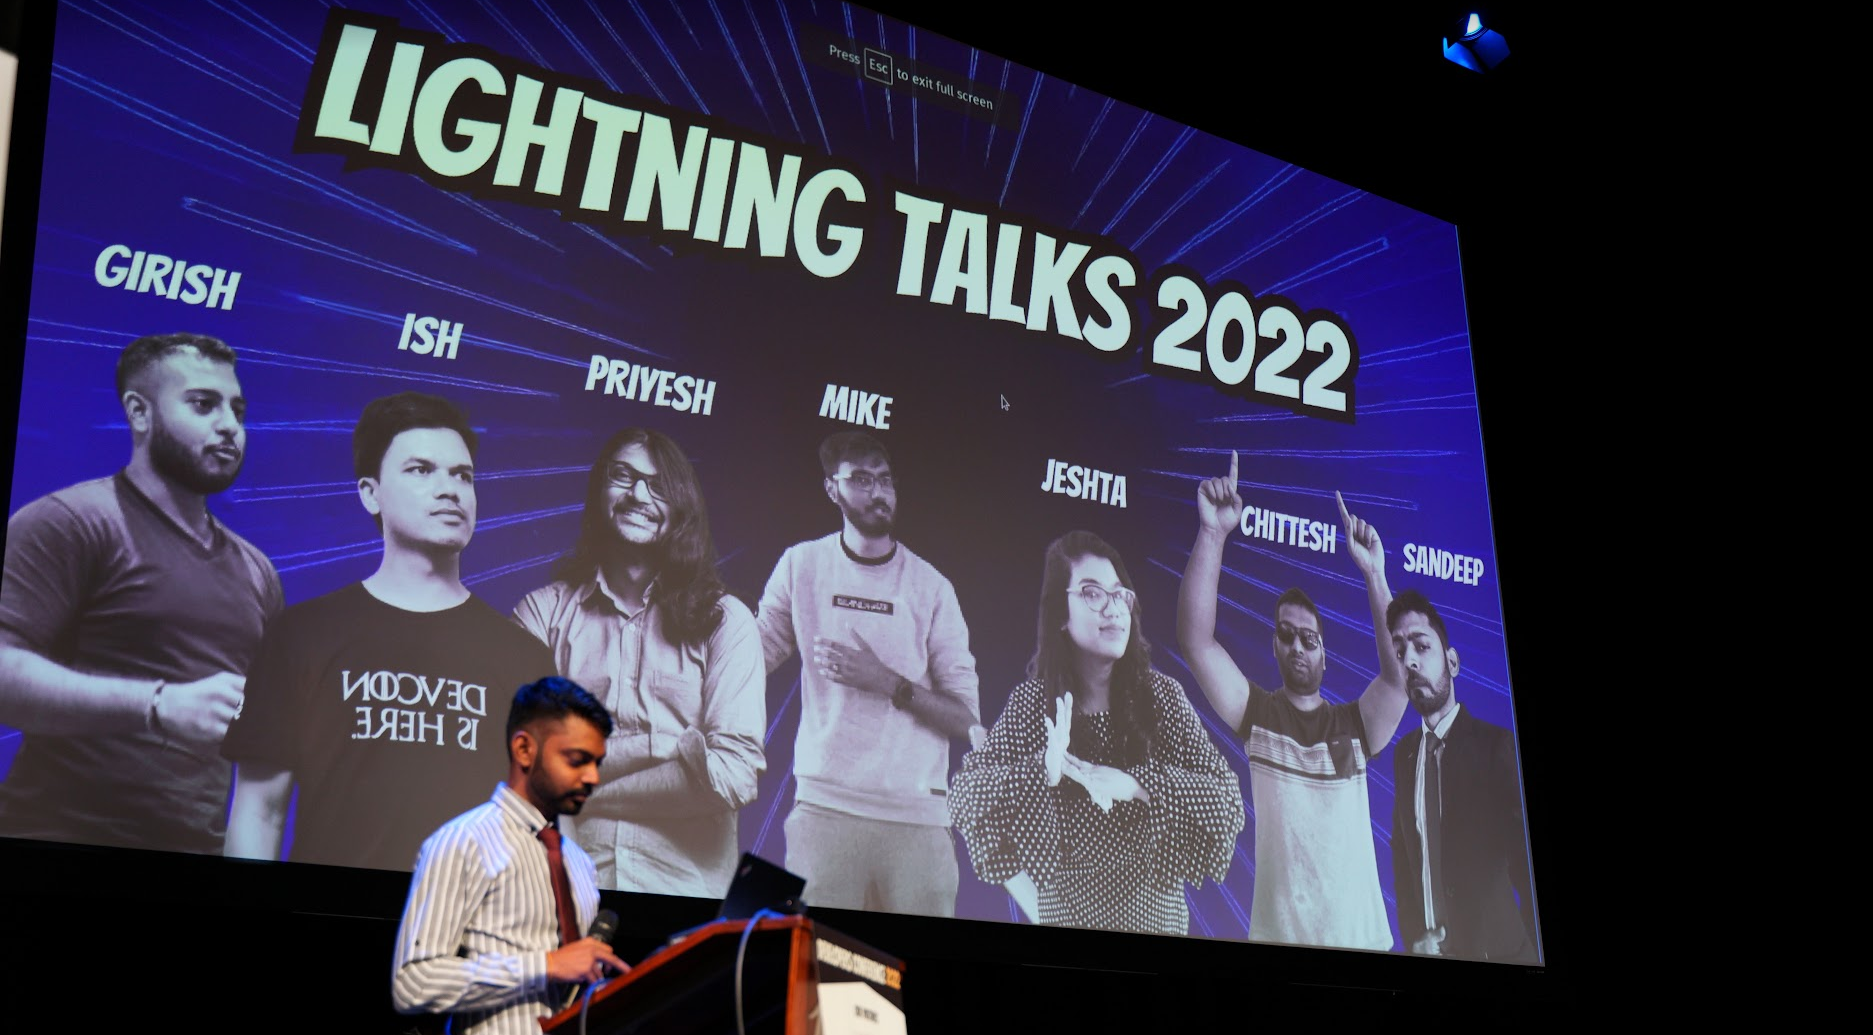 Hosting the Lightning Talks at DevCon 2022